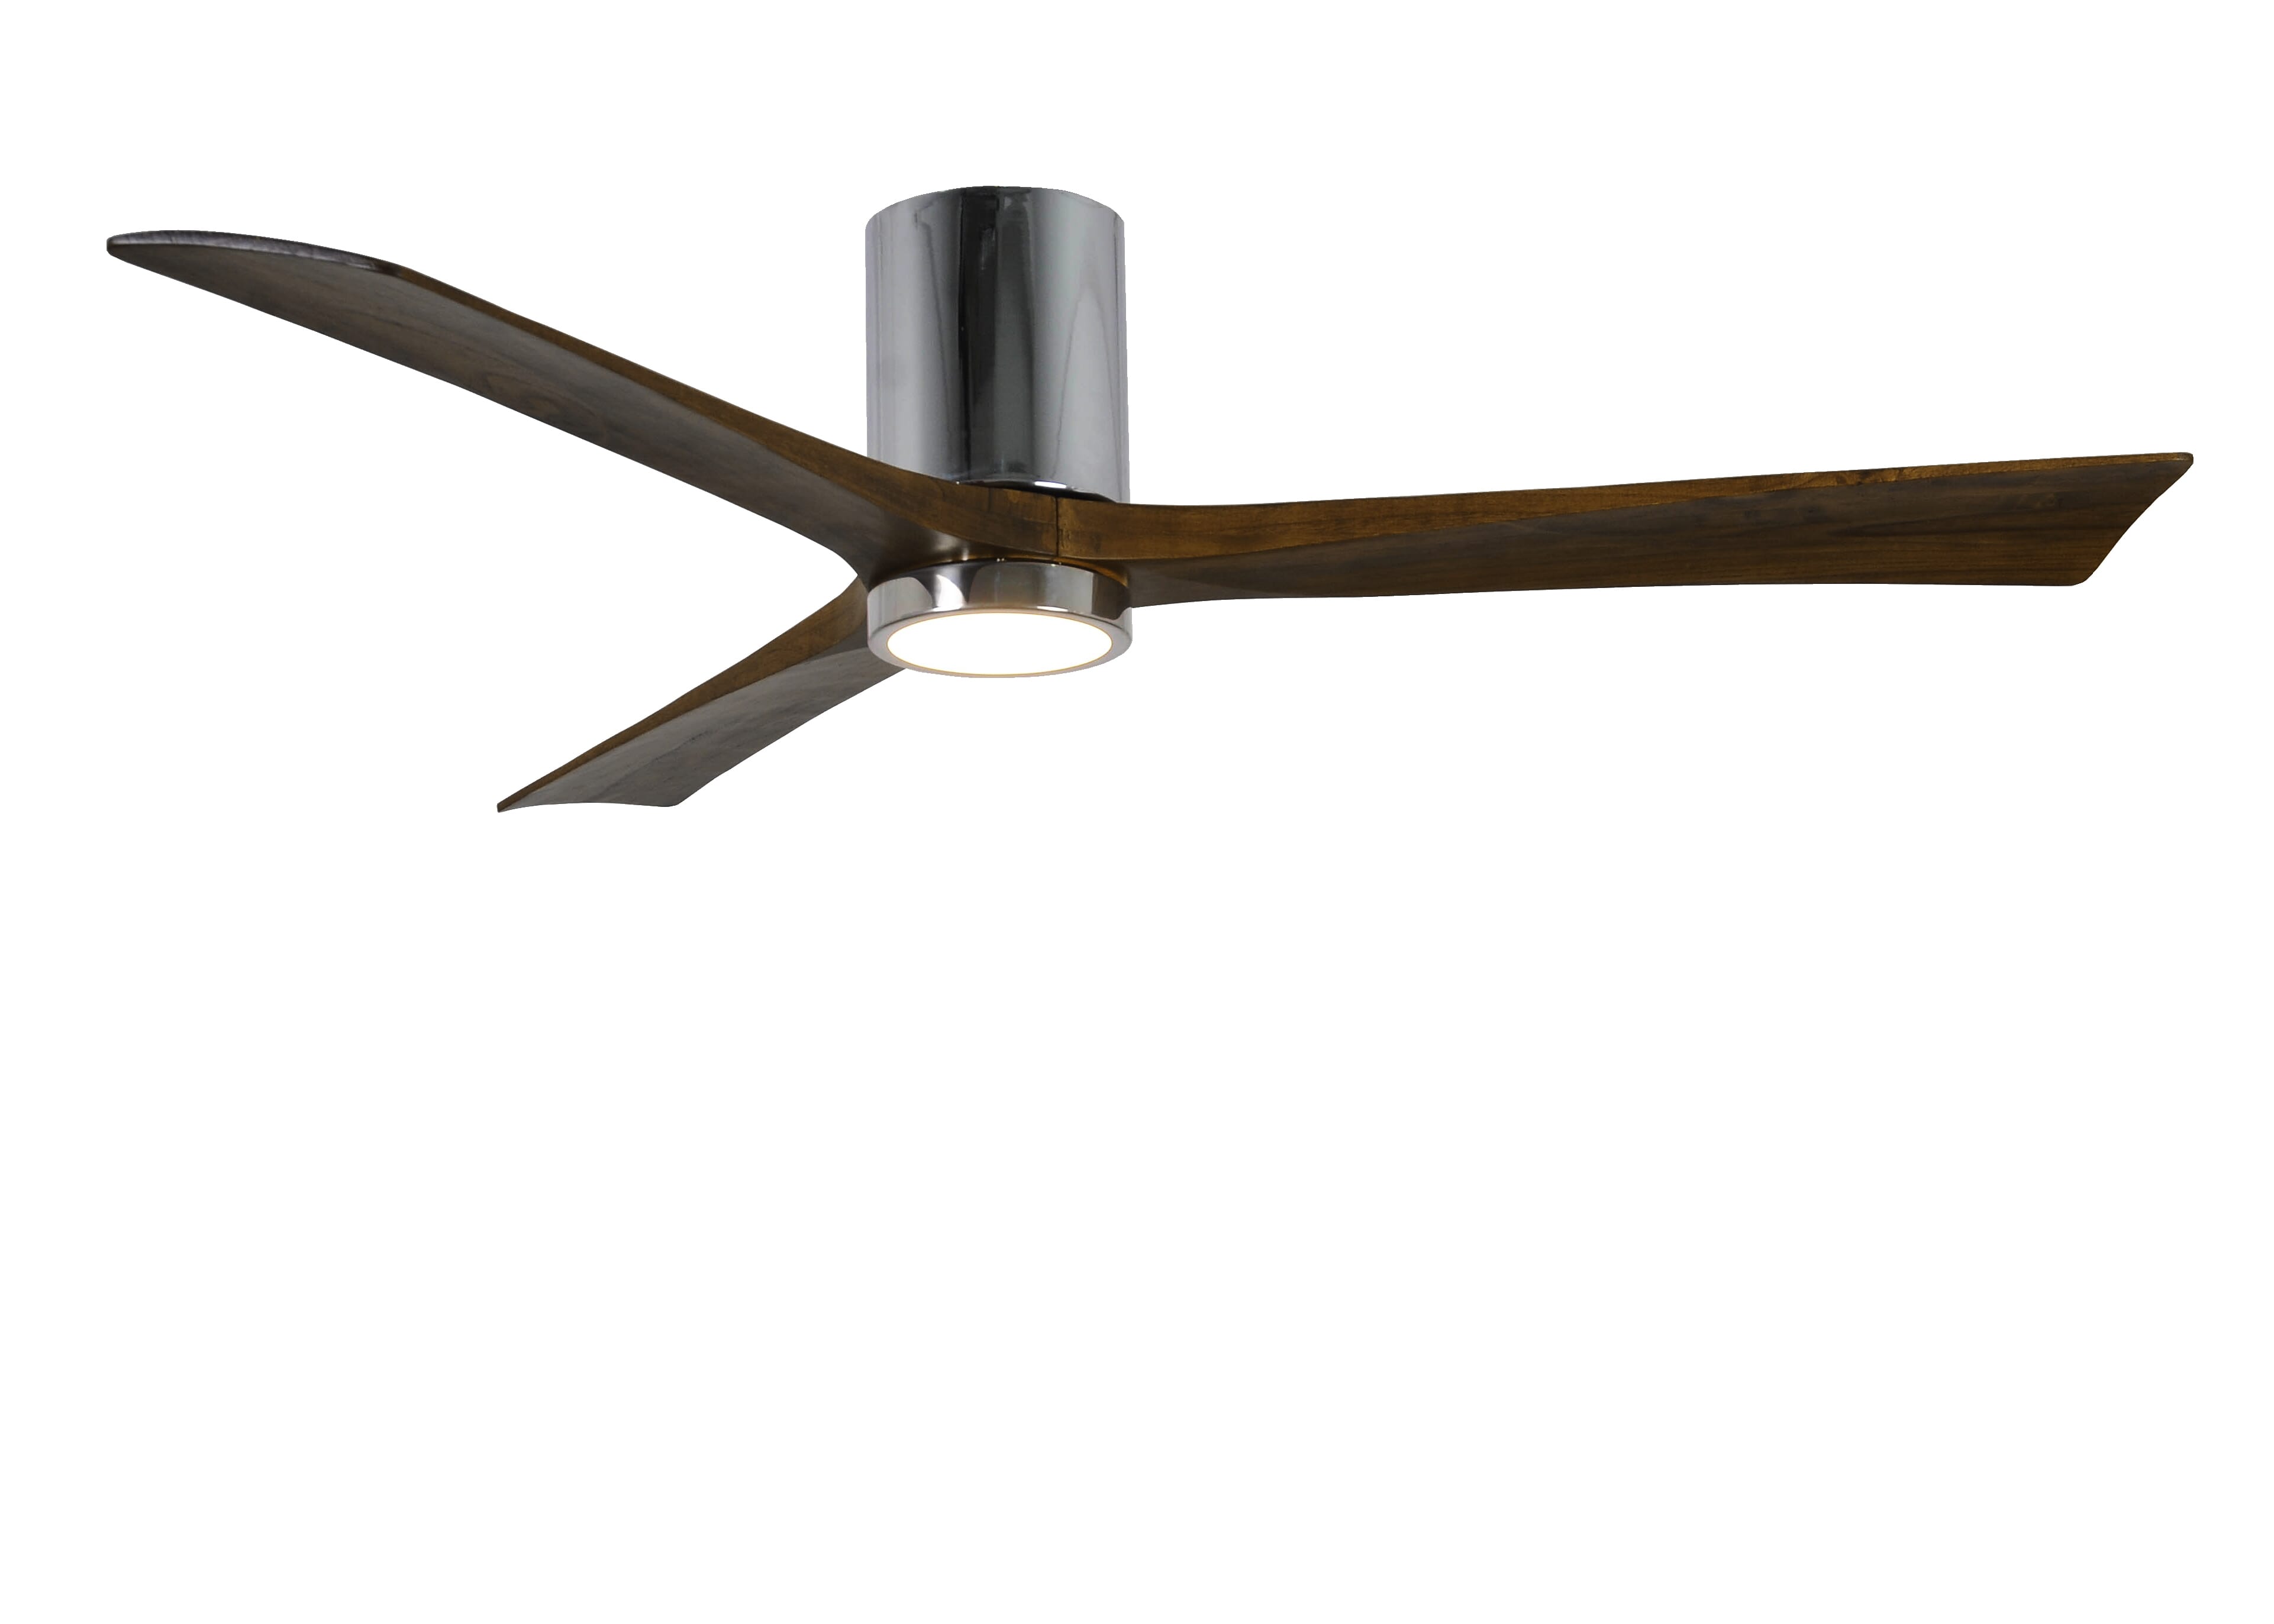 Matthews Irene 60"" Indoor Ceiling Fan in Polished Chrome -  Matthews Fan Company, IR3HLK-CR-WA-60